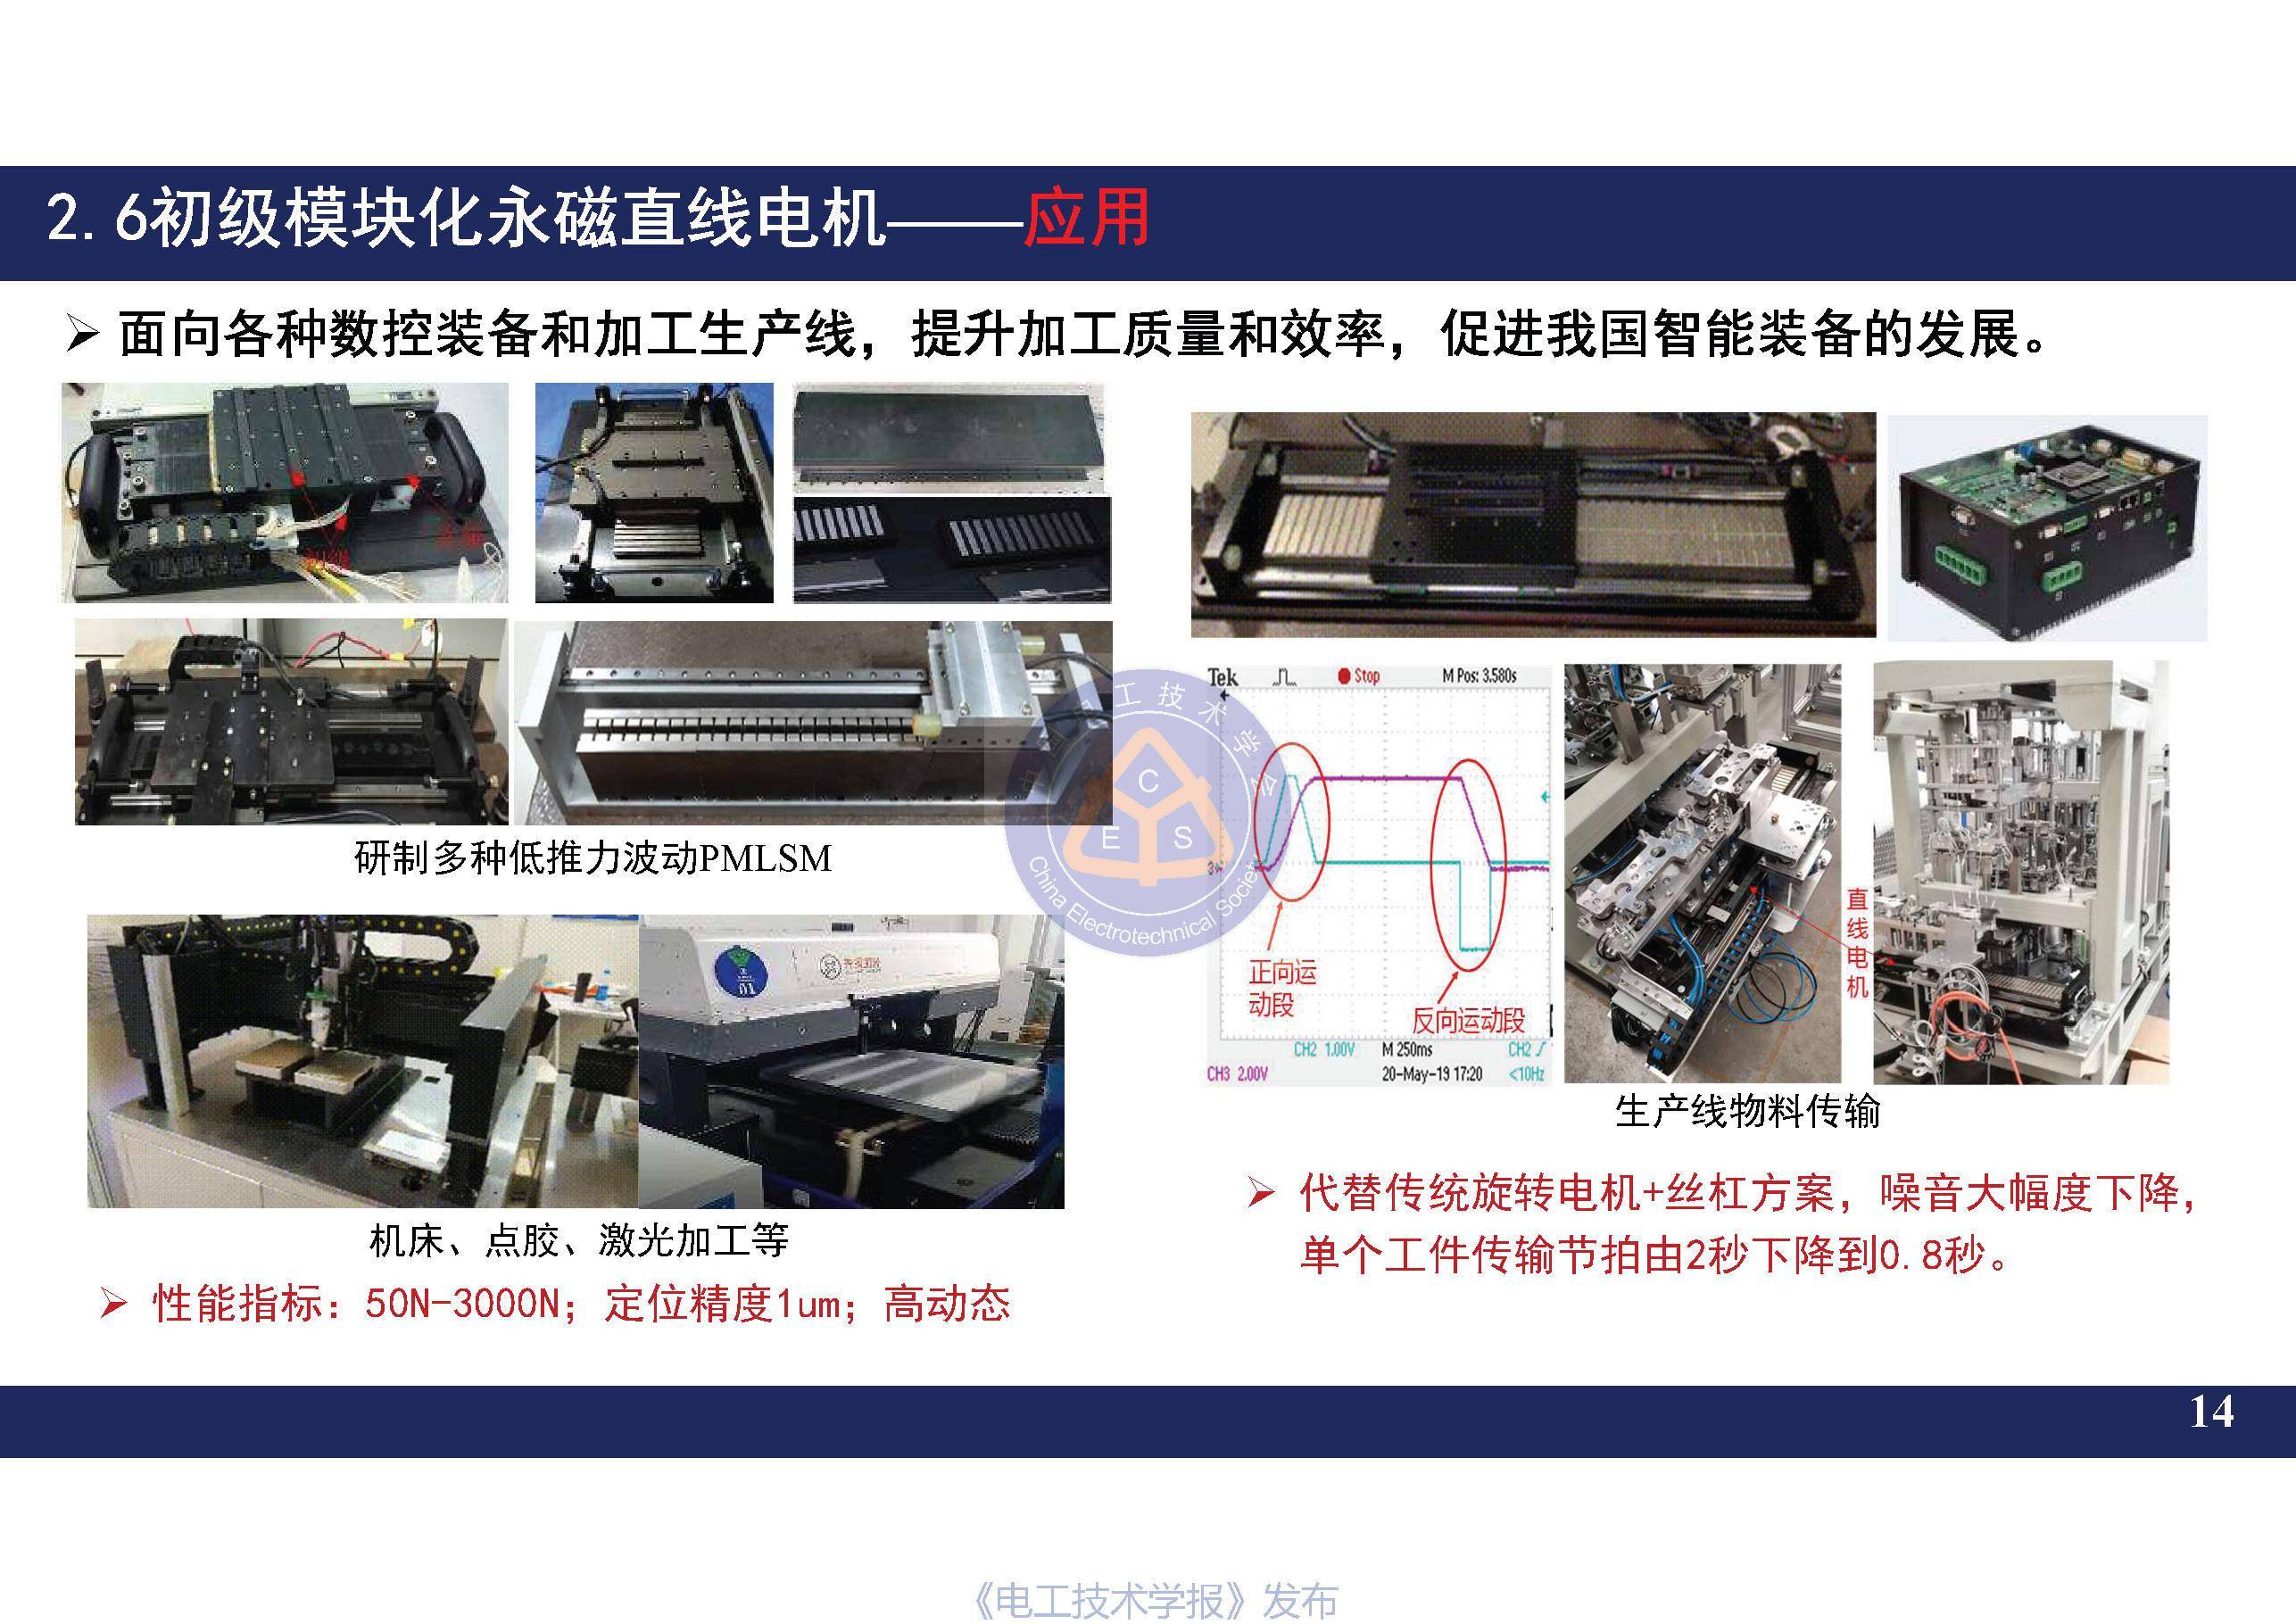 南京航空航天大学黄旭珍教授柔性永磁直线电机的设计与应用